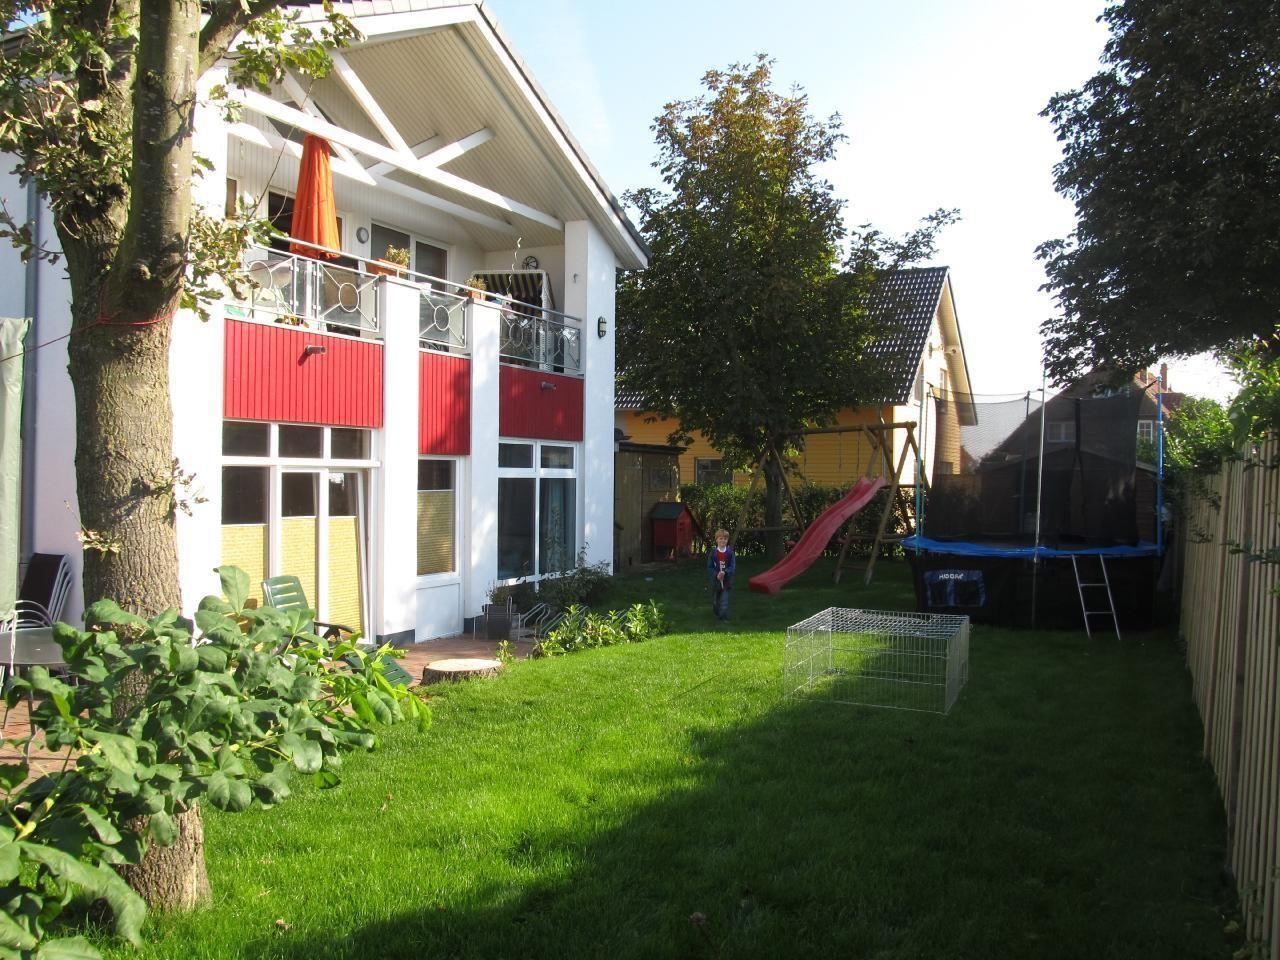 Appartement in Wulfen mit Garten, Grill und Terras  an der Ostsee